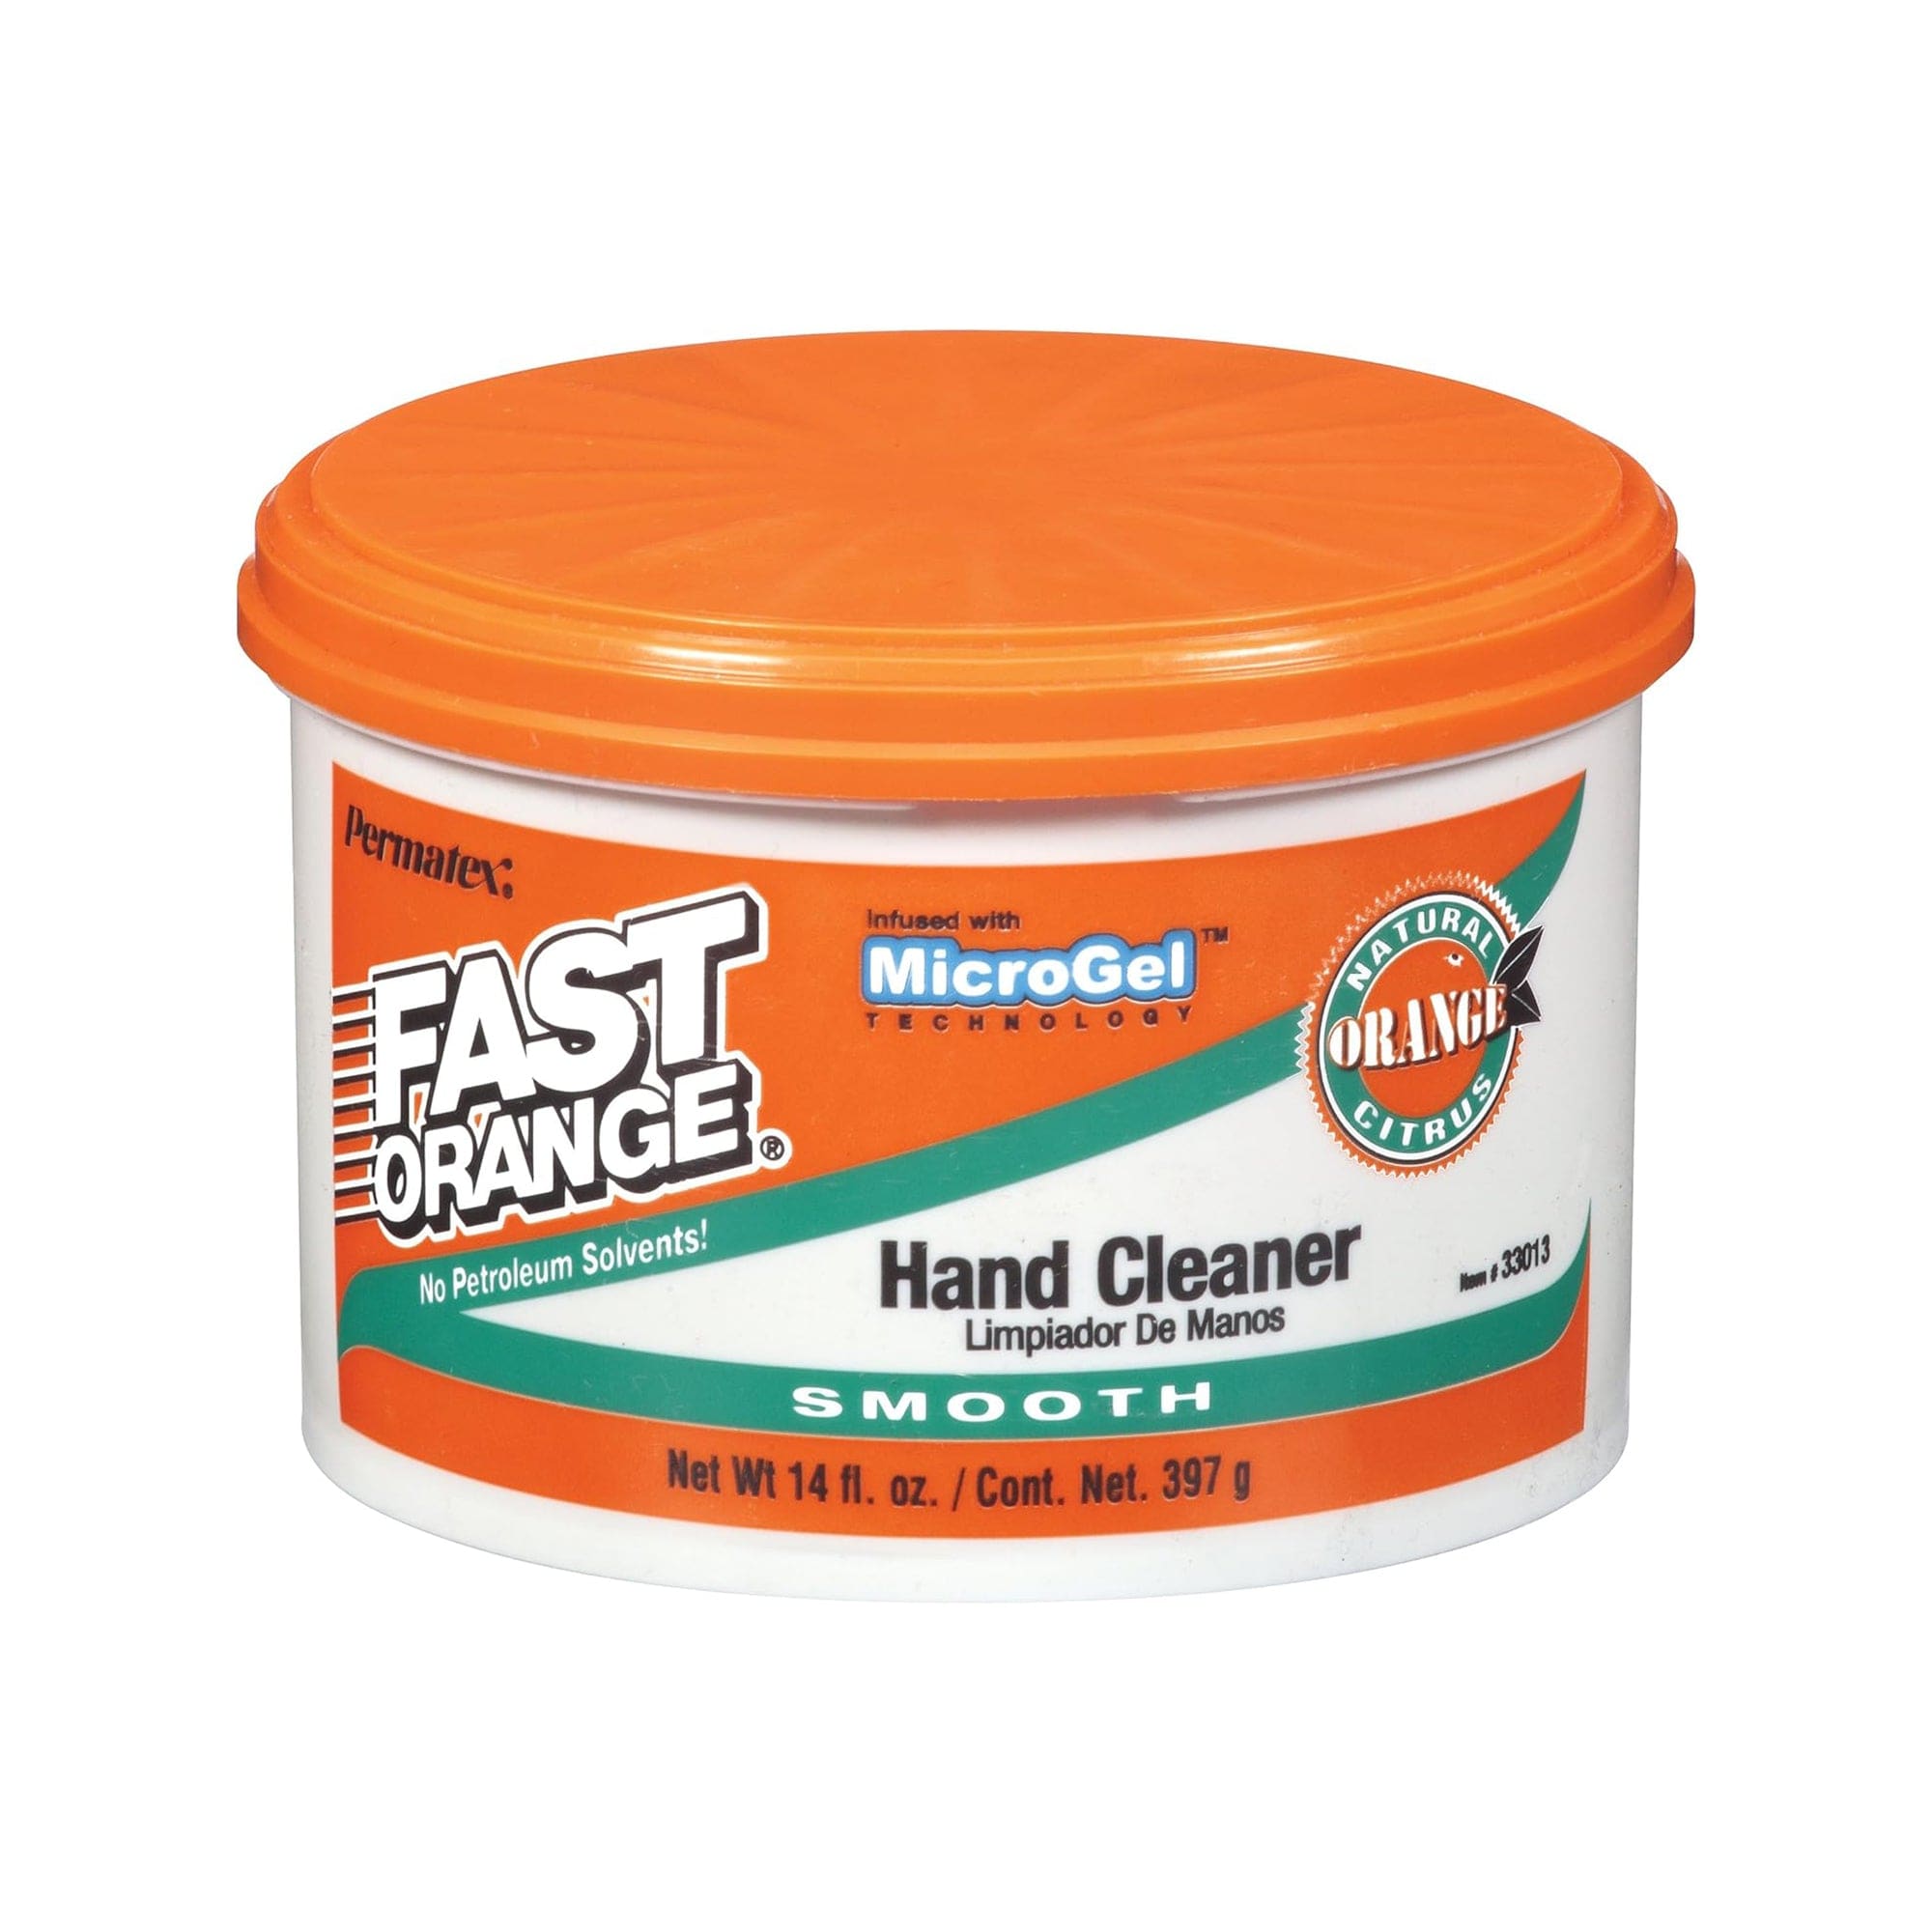 Fast Orange Smooth Cream Hand Cleaner, 14 oz. - Permatex 33013